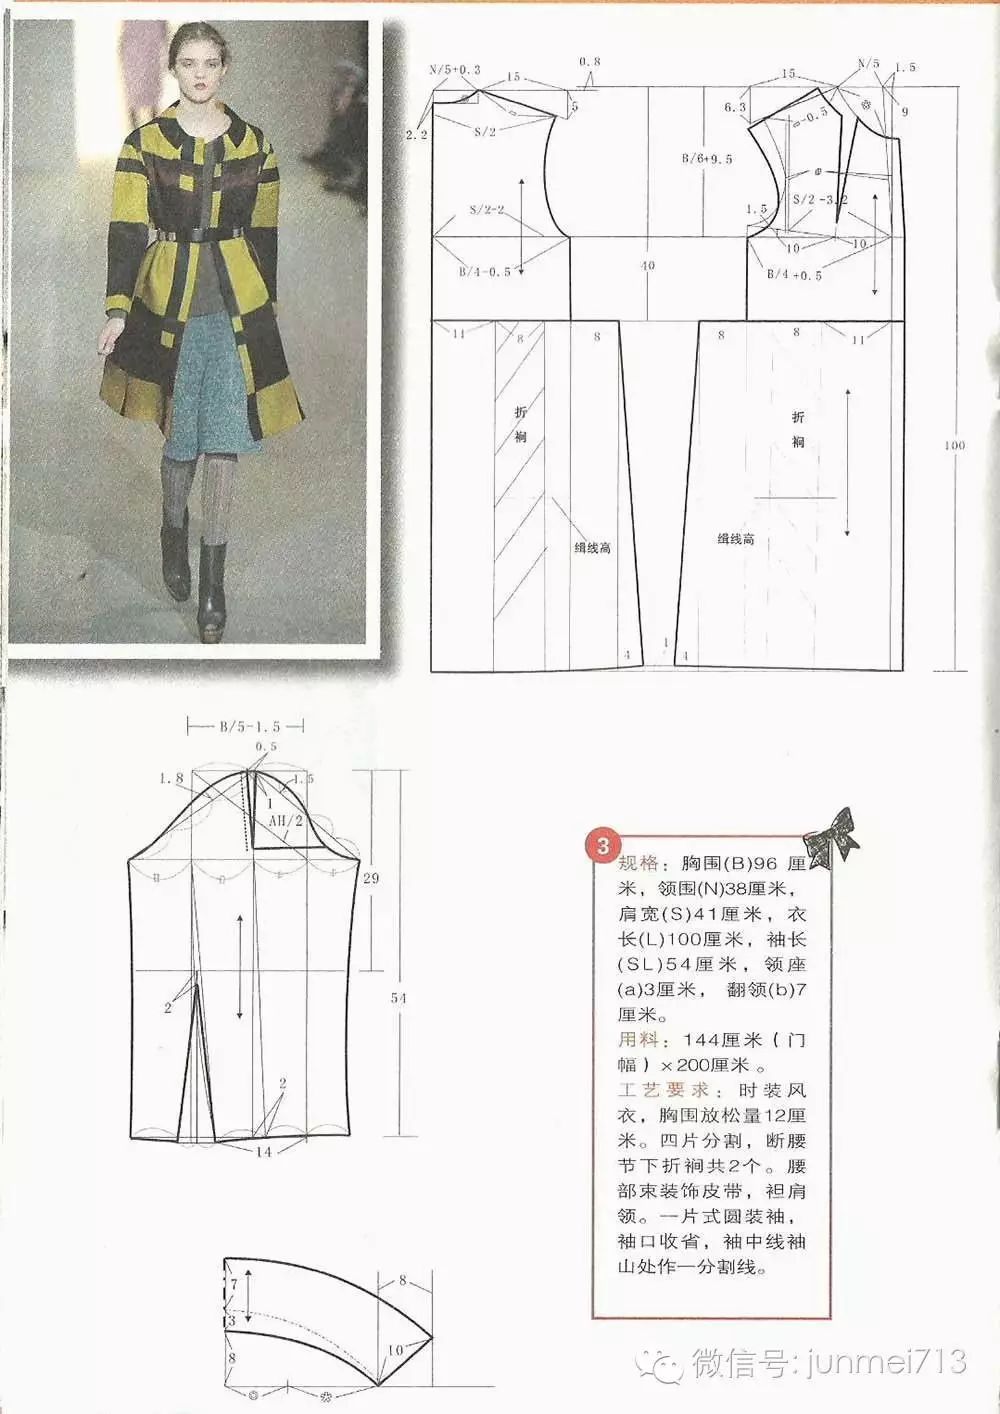 版师必备24款走秀款时尚大衣设计和制版图,超详细完整的!